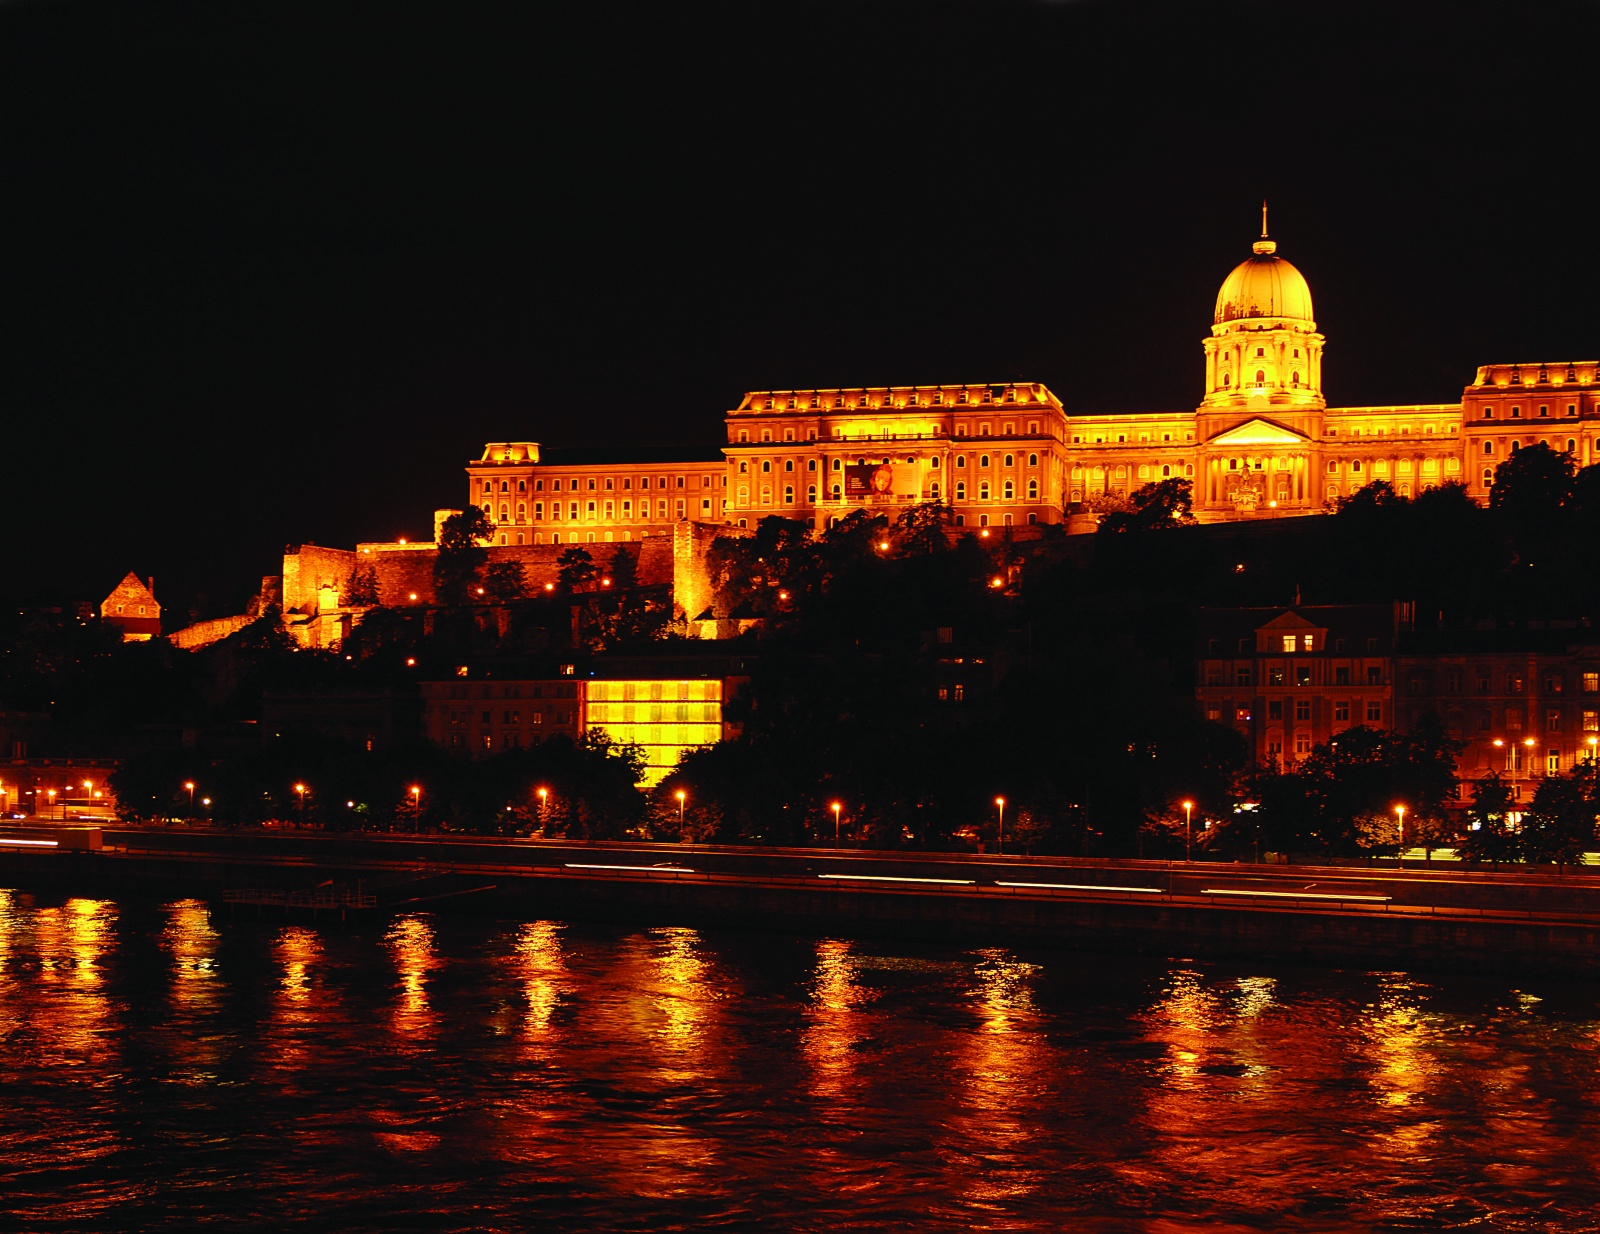 Отель Lanchid-19 из водонапорной башни рядом с Цепным мостом в Будапеште, Венгрия